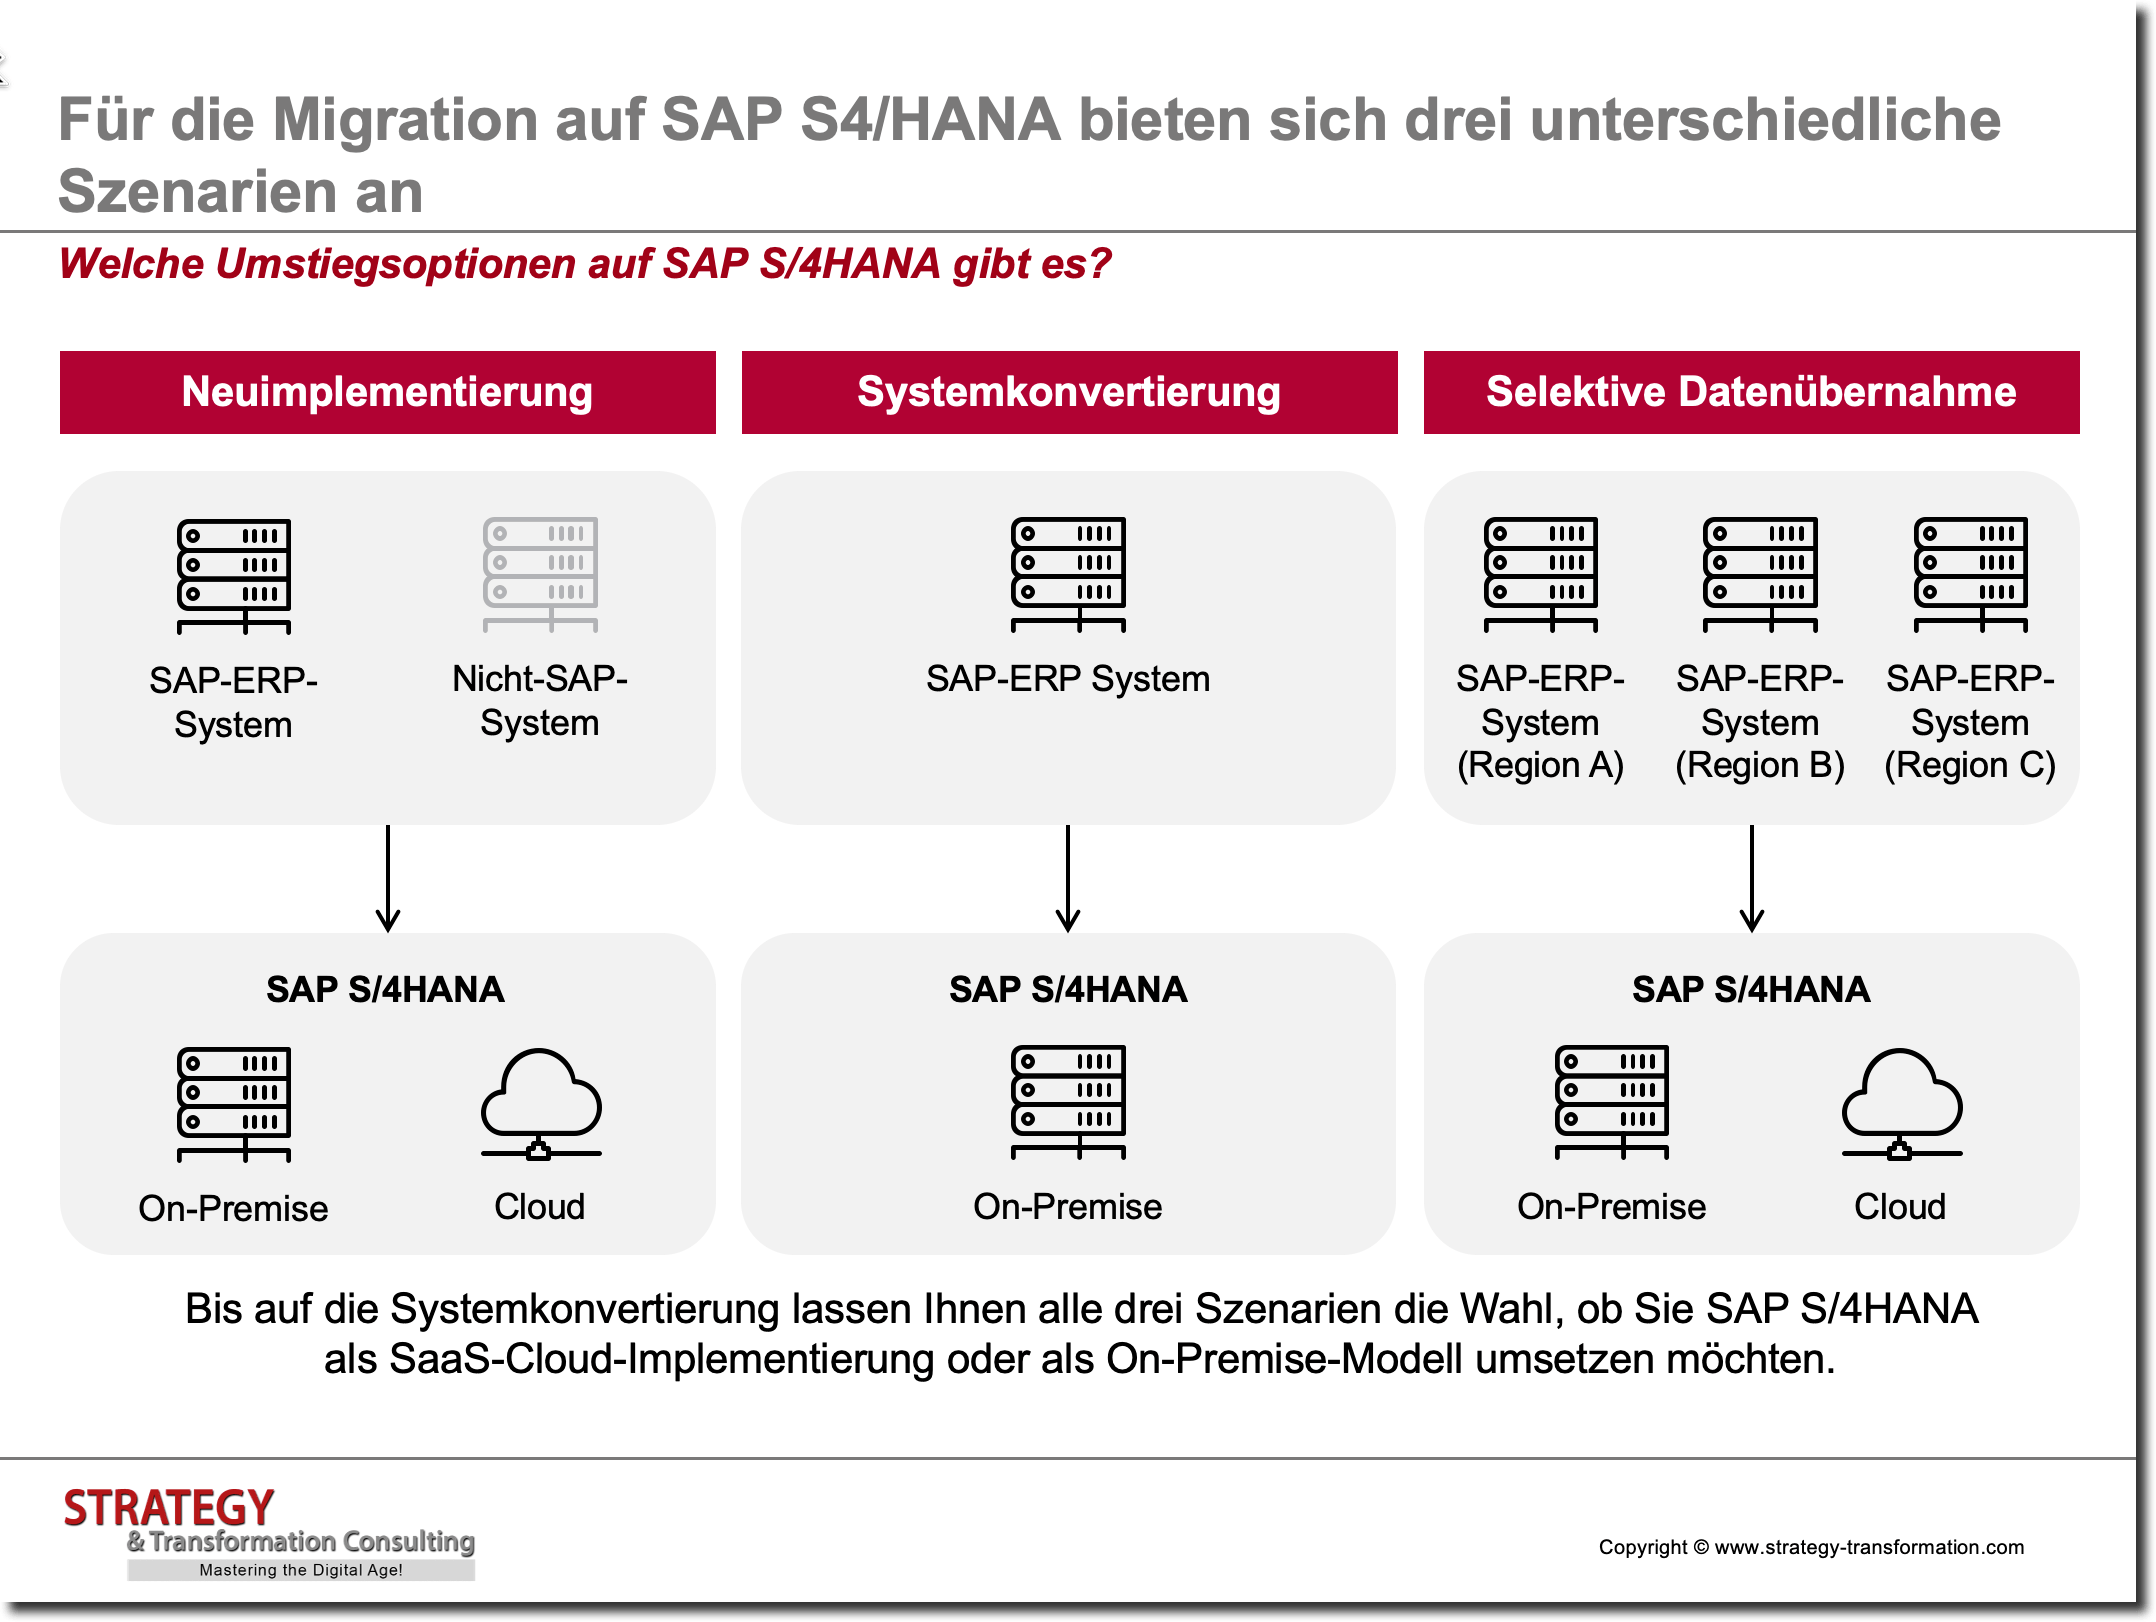 Welche Umstiegsoptionen auf SAP S/4HANA gibt es?